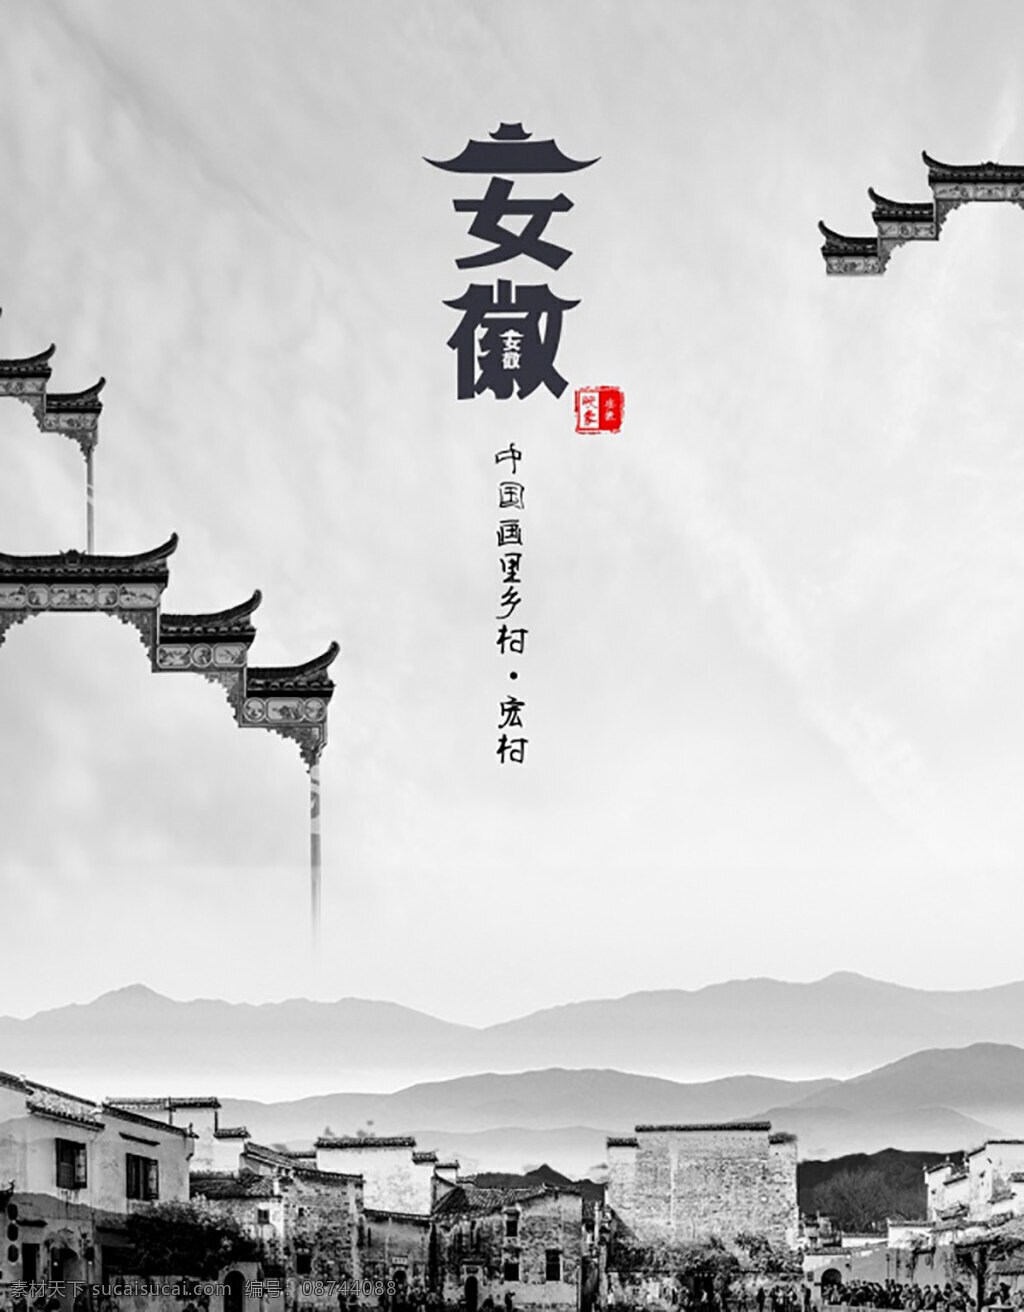 中国 风 城市 宣传海报 风景 徽派 山水 水墨 民居